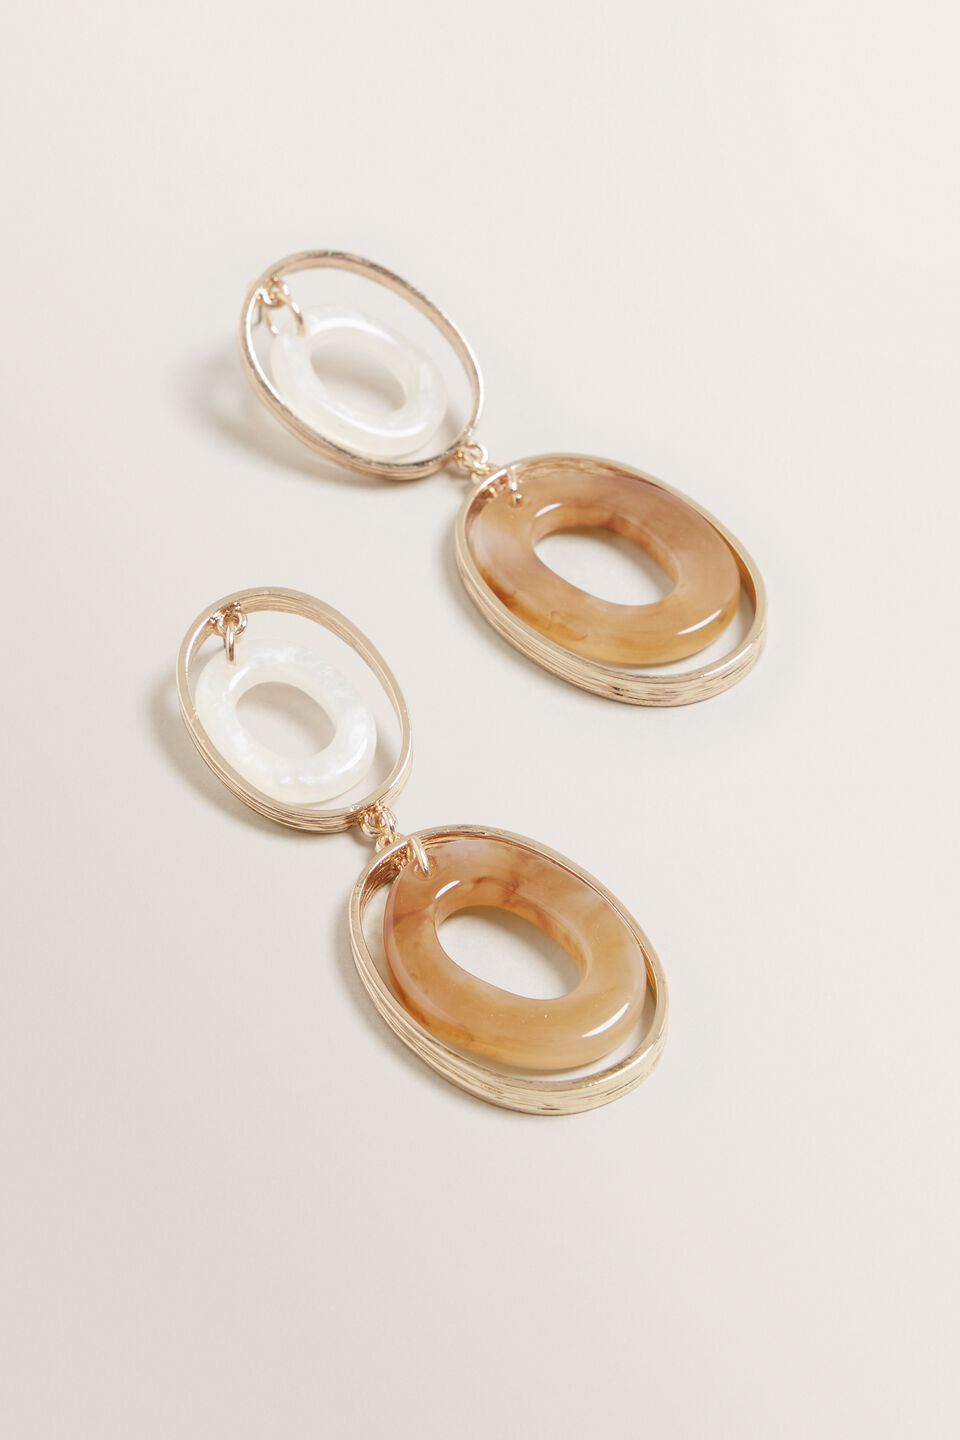 Double Oval Resin Earrings  